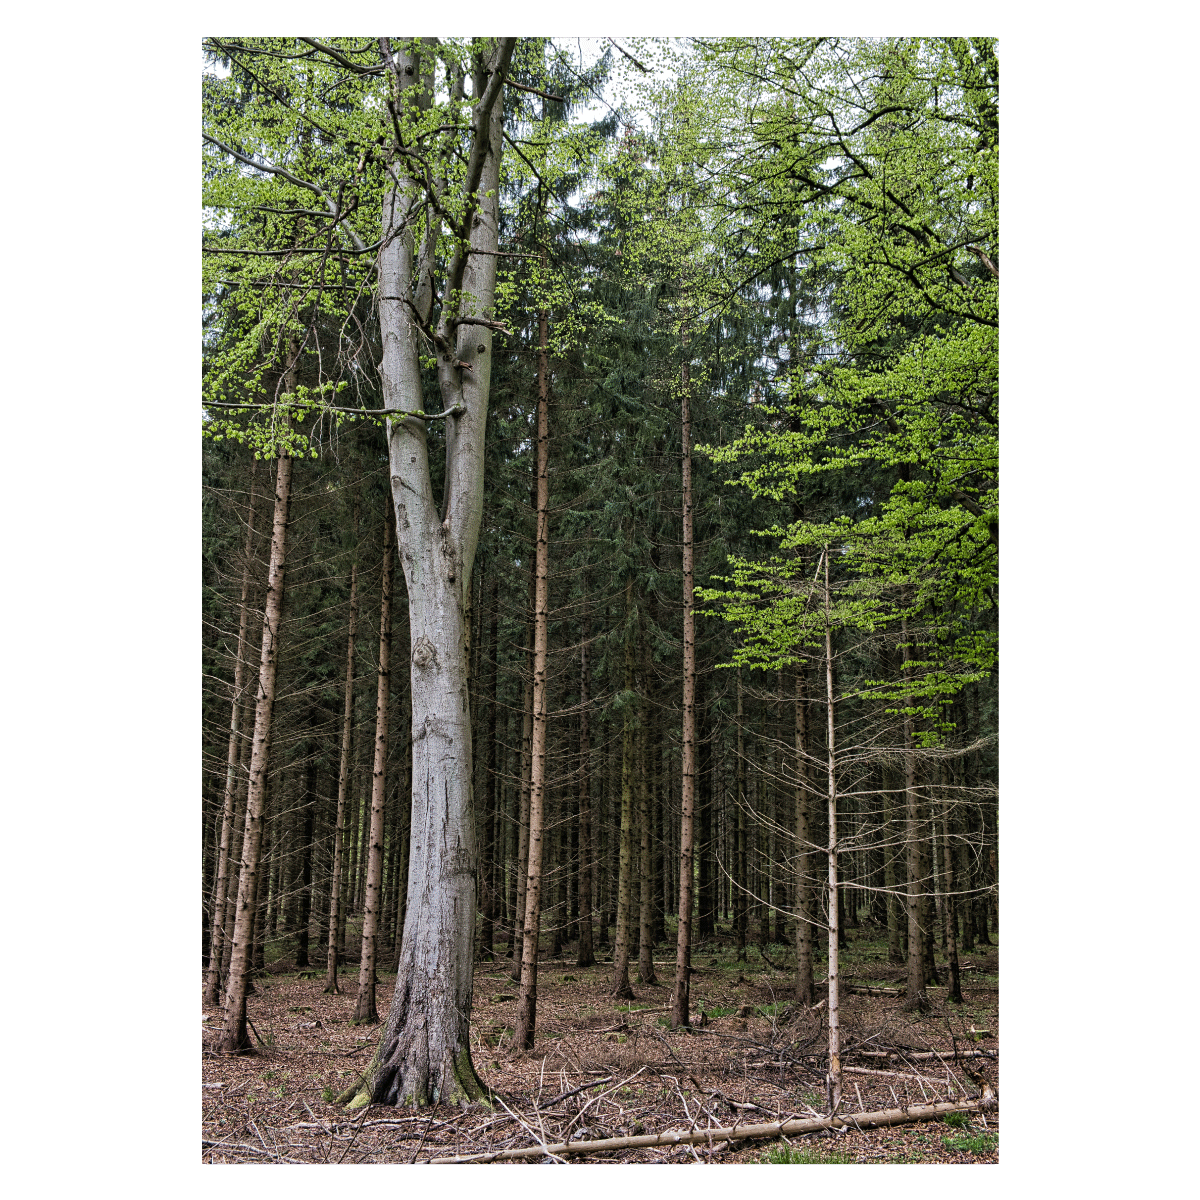 danmark plakat med fyrretræer i en dansk skov i forår